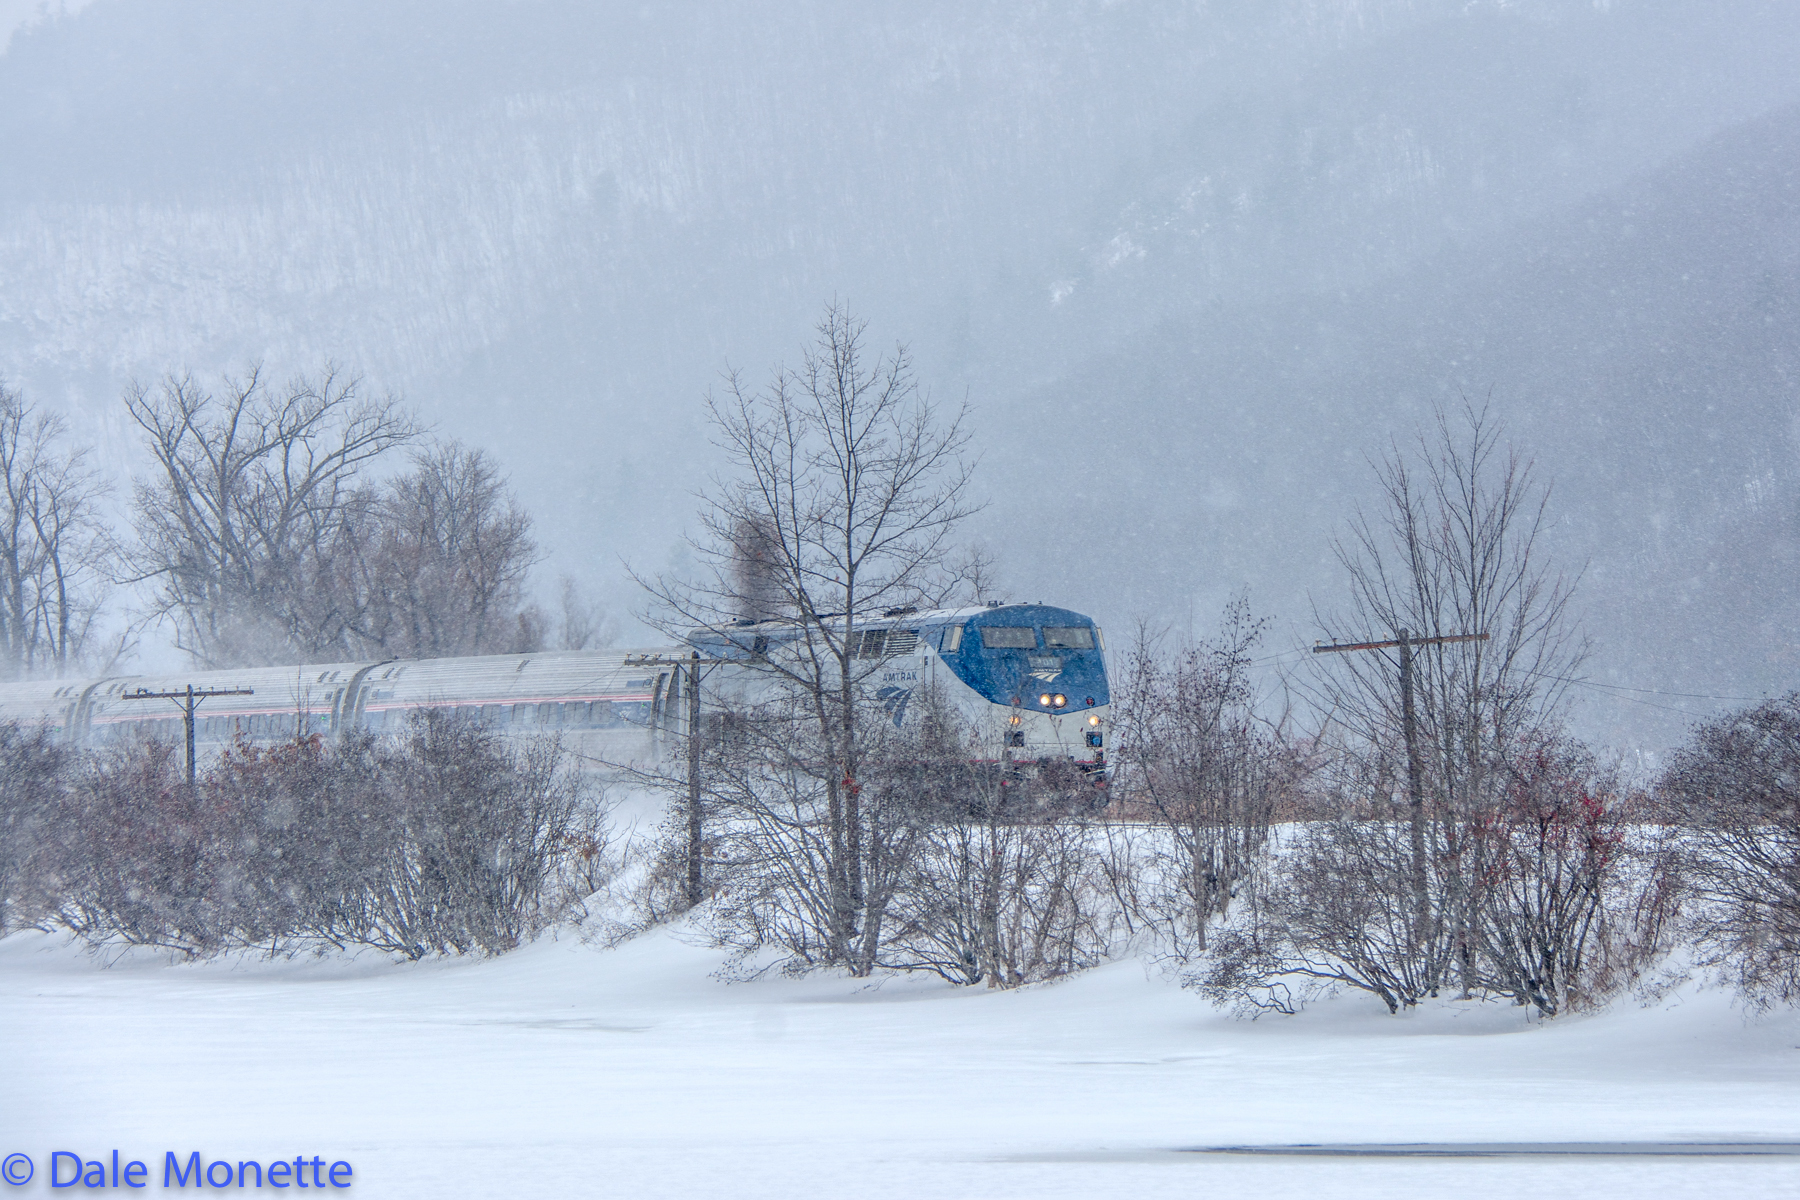 Amtrak Vermonter through Brattleboro in storm 2/15